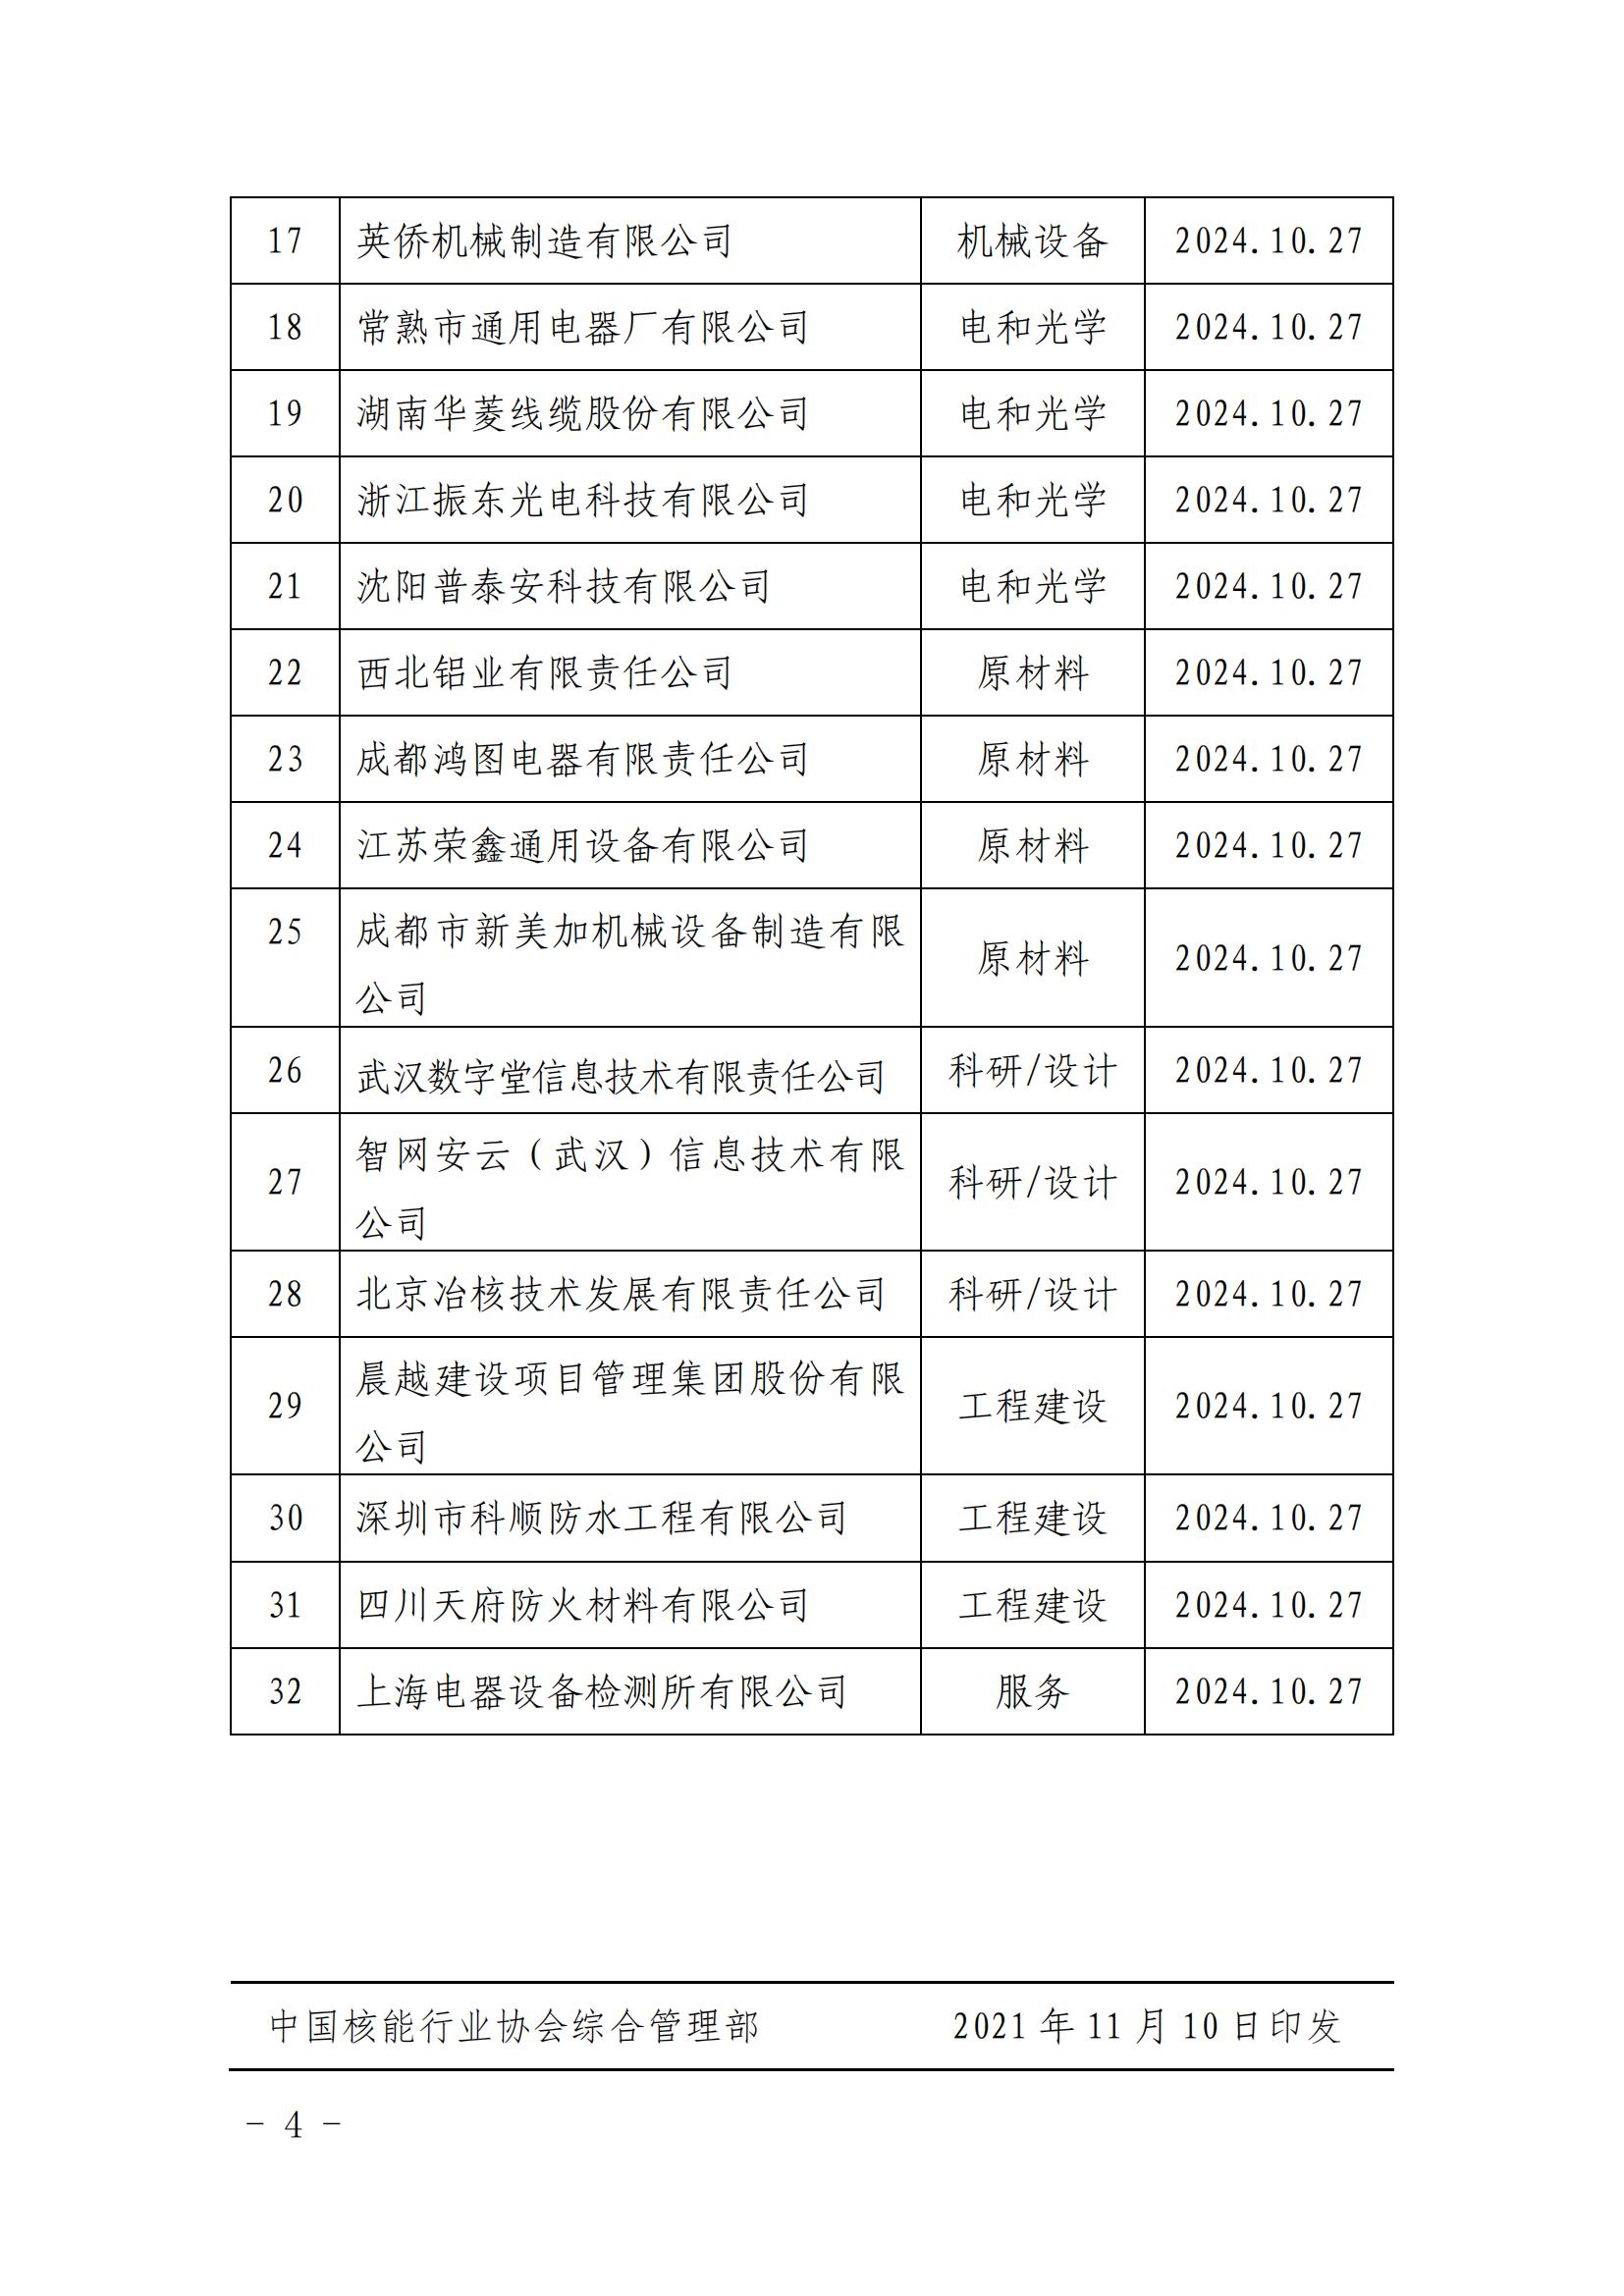 关于发布中国核能行业协会核能行业第二批合格供应商名录的公告_03.jpg